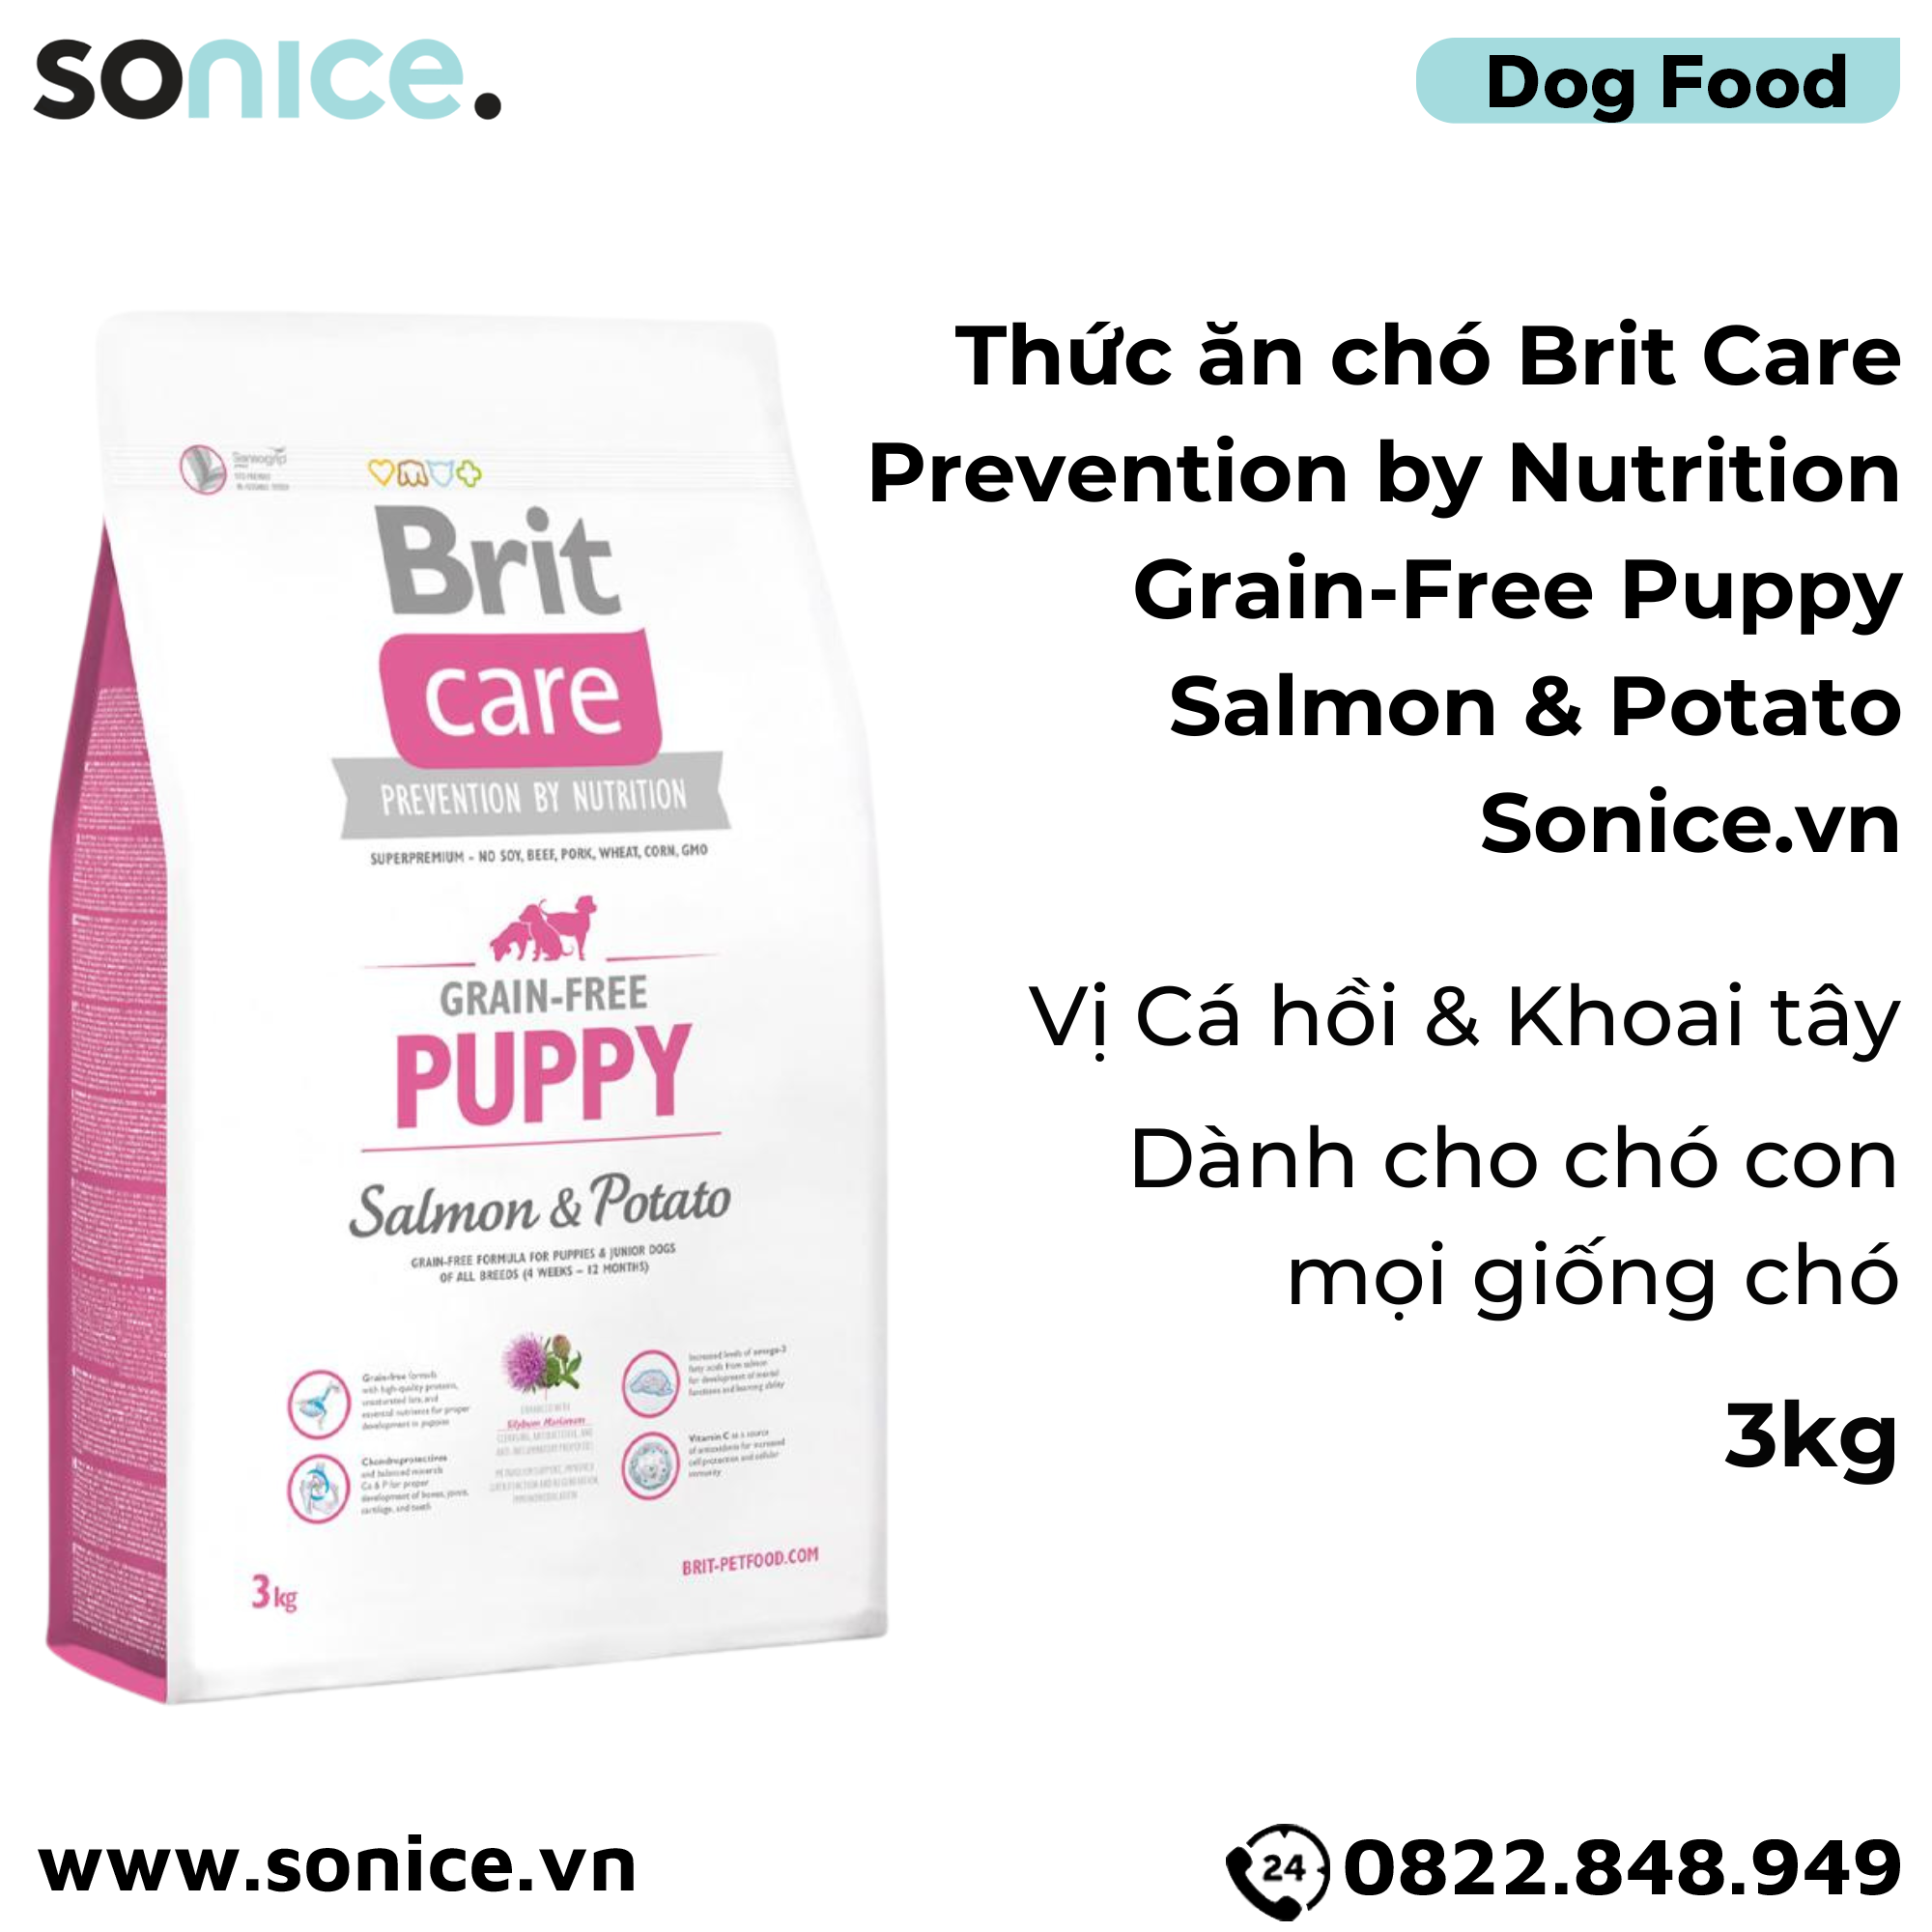  Thức ăn chó Brit Care Prevention by Nutrition Grain-Free Puppy Salmon & Potato 3kg - Dành cho chó con mọi giống chó vị Cá hồi và Khoai tây SONICE.. 